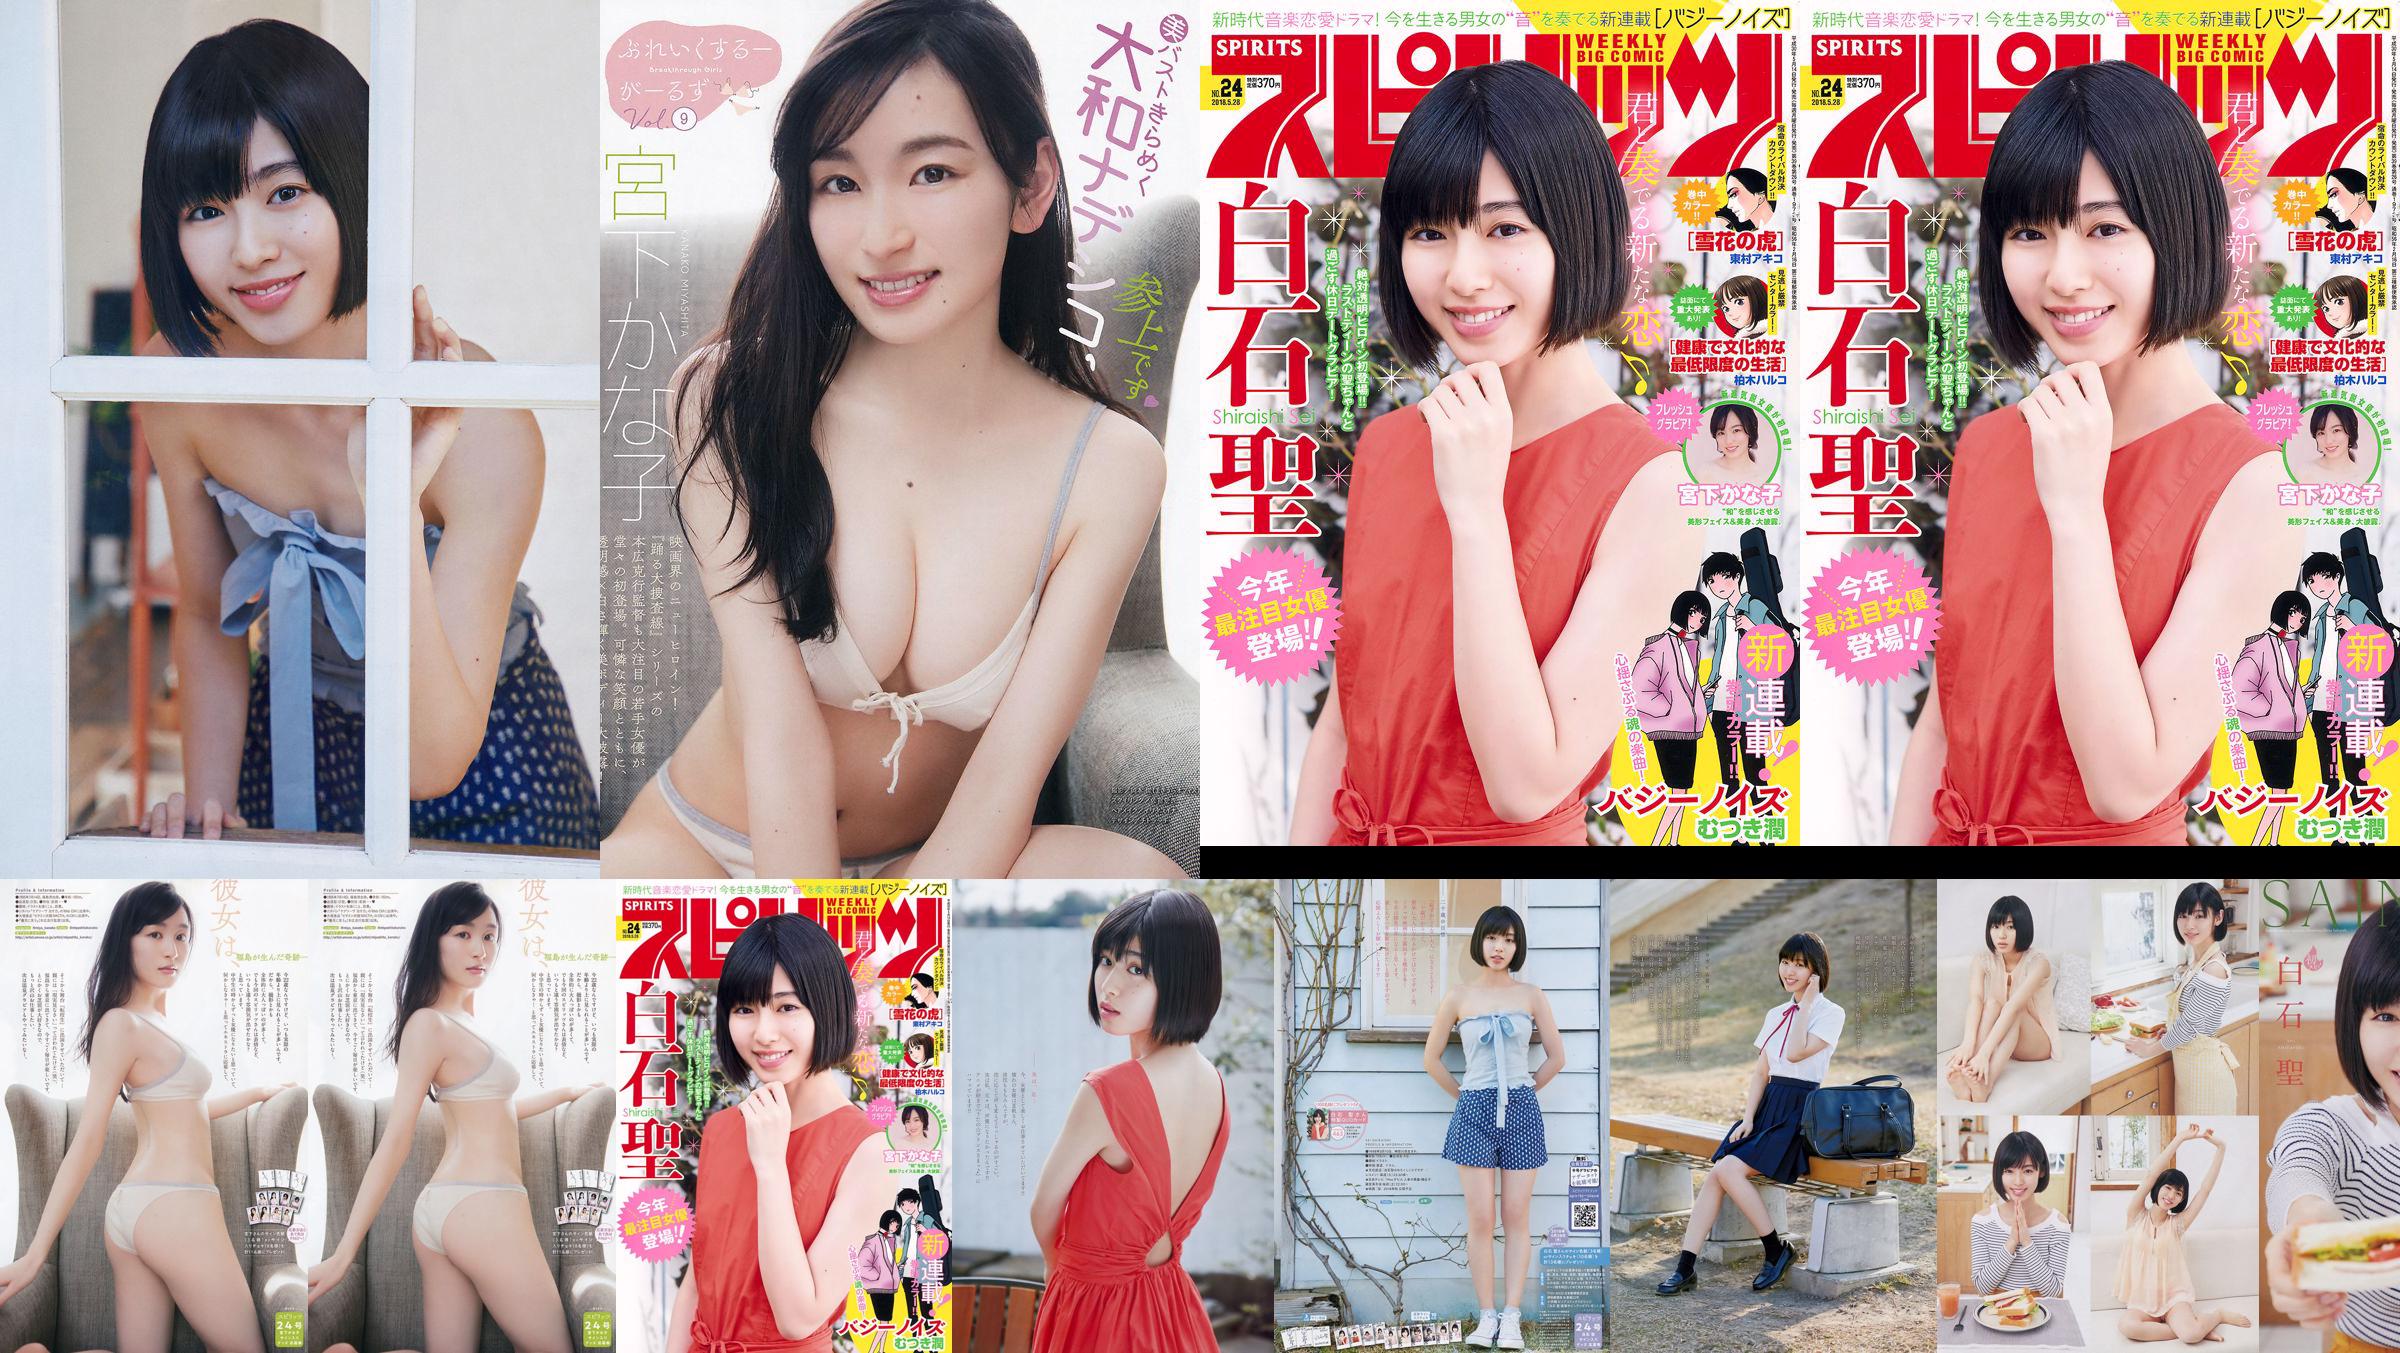 Юрия Кизаки Нана Окада AKB48 Under Girls [Weekly Young Jump] 2015 № 36-37 Фото No.41a538 Страница 2